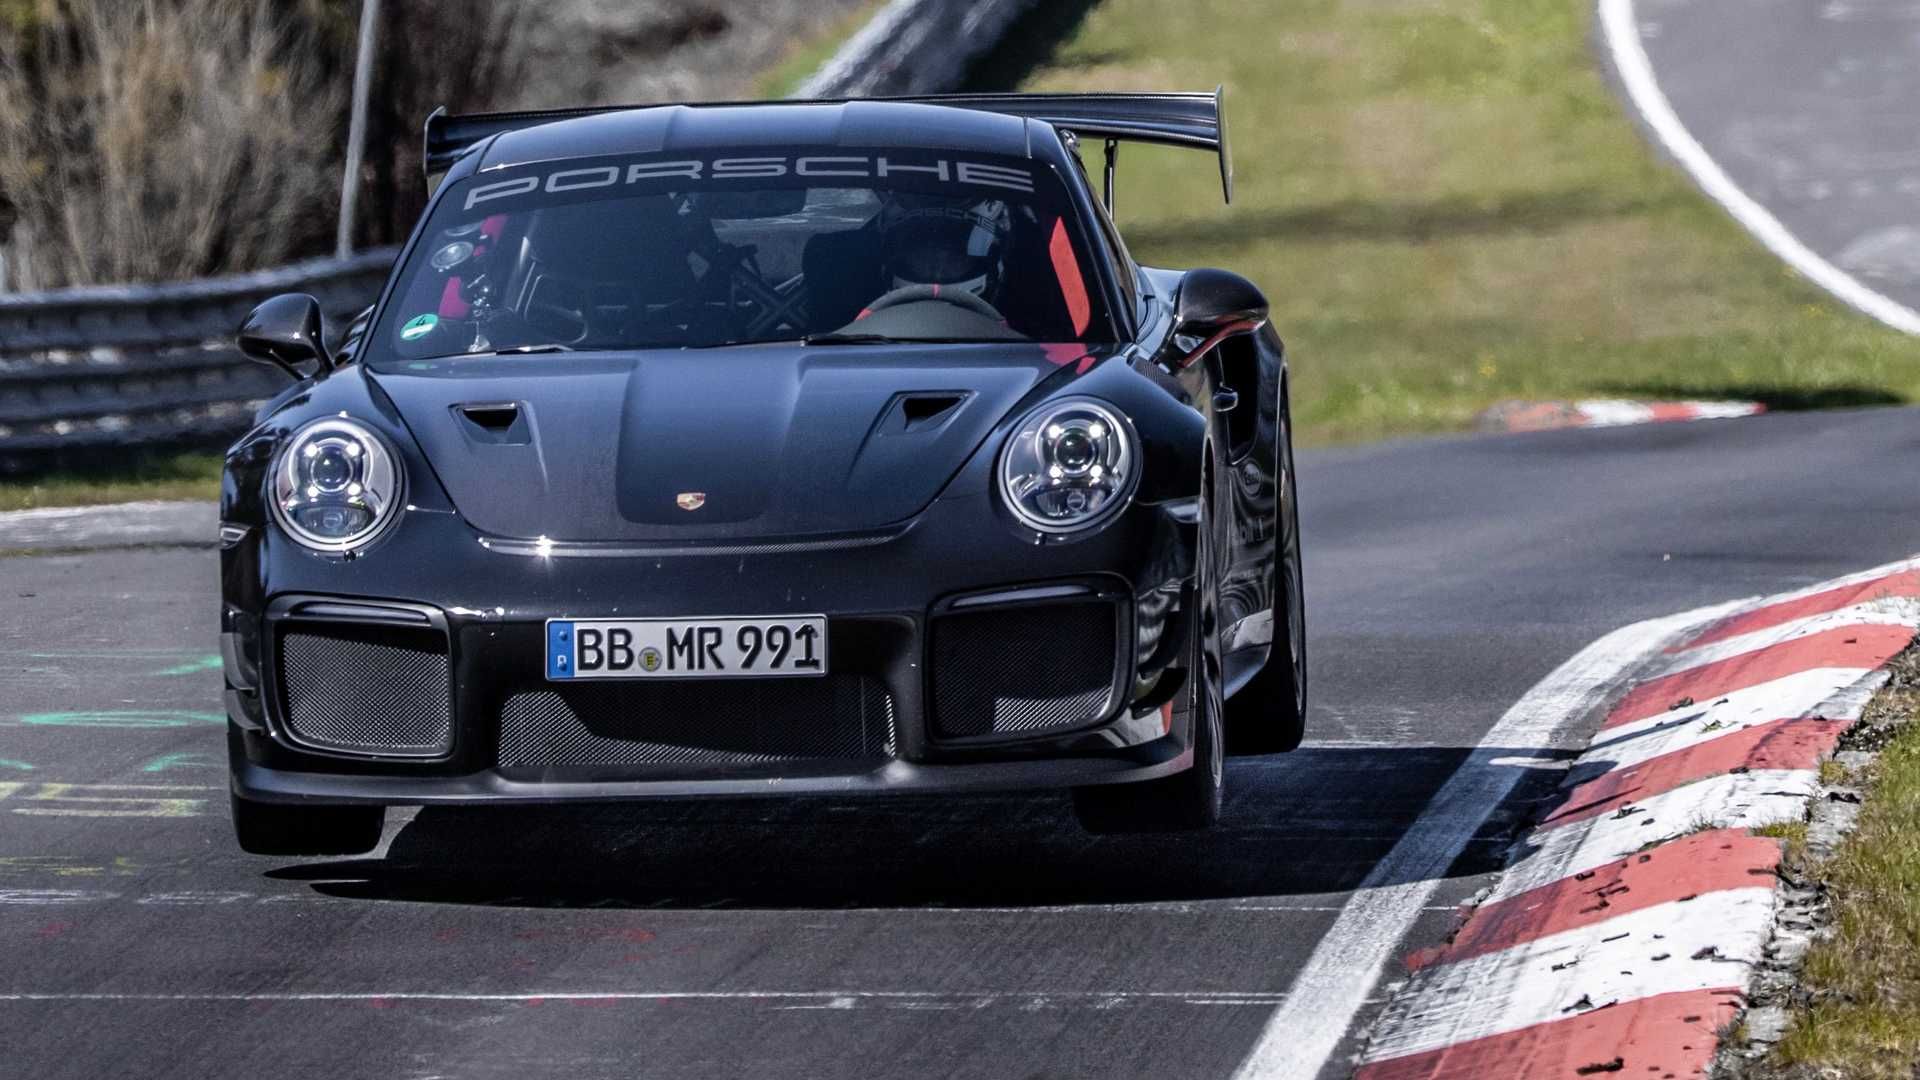 نمای جلو  پورشه 911 جی تی 2 آر اس / Porsche 911 GT2 RS تیونینگ Manthey Racing در پیست نوربرگ رینگ